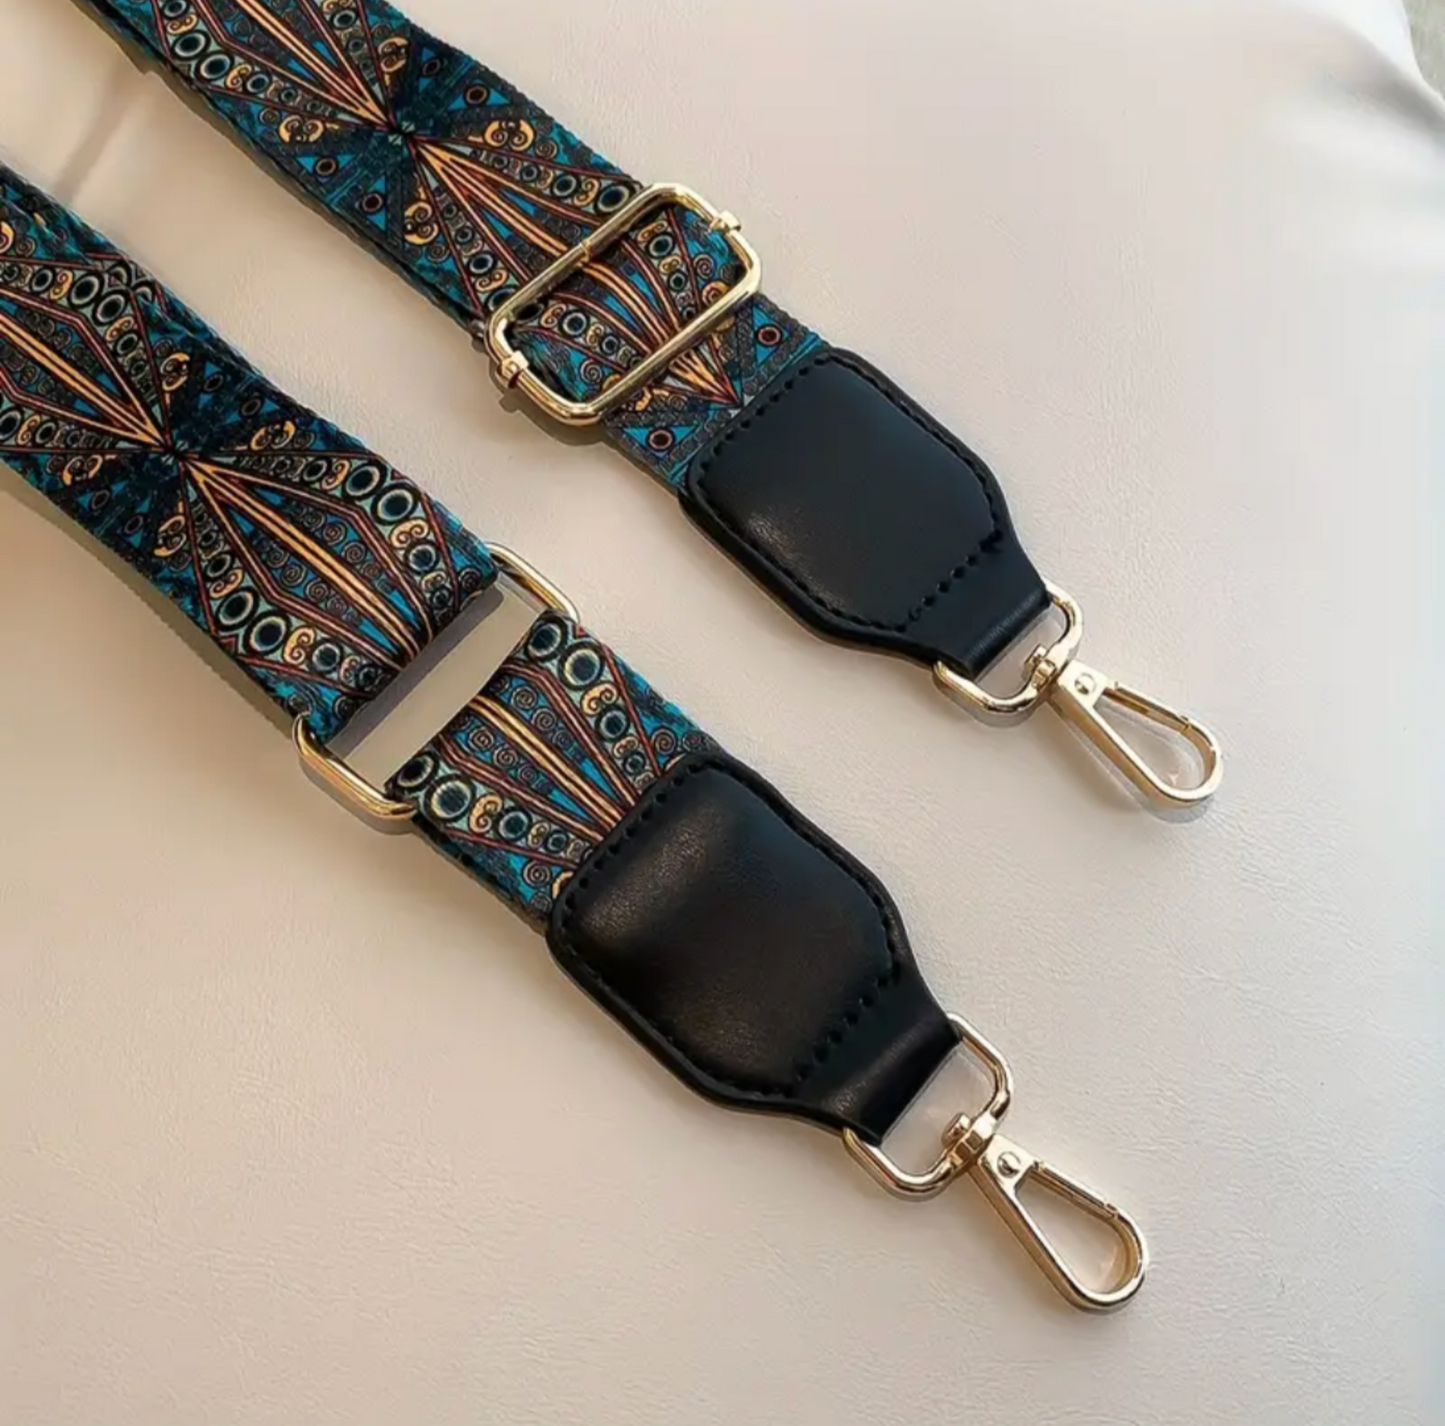 Leather end bag strap (black)